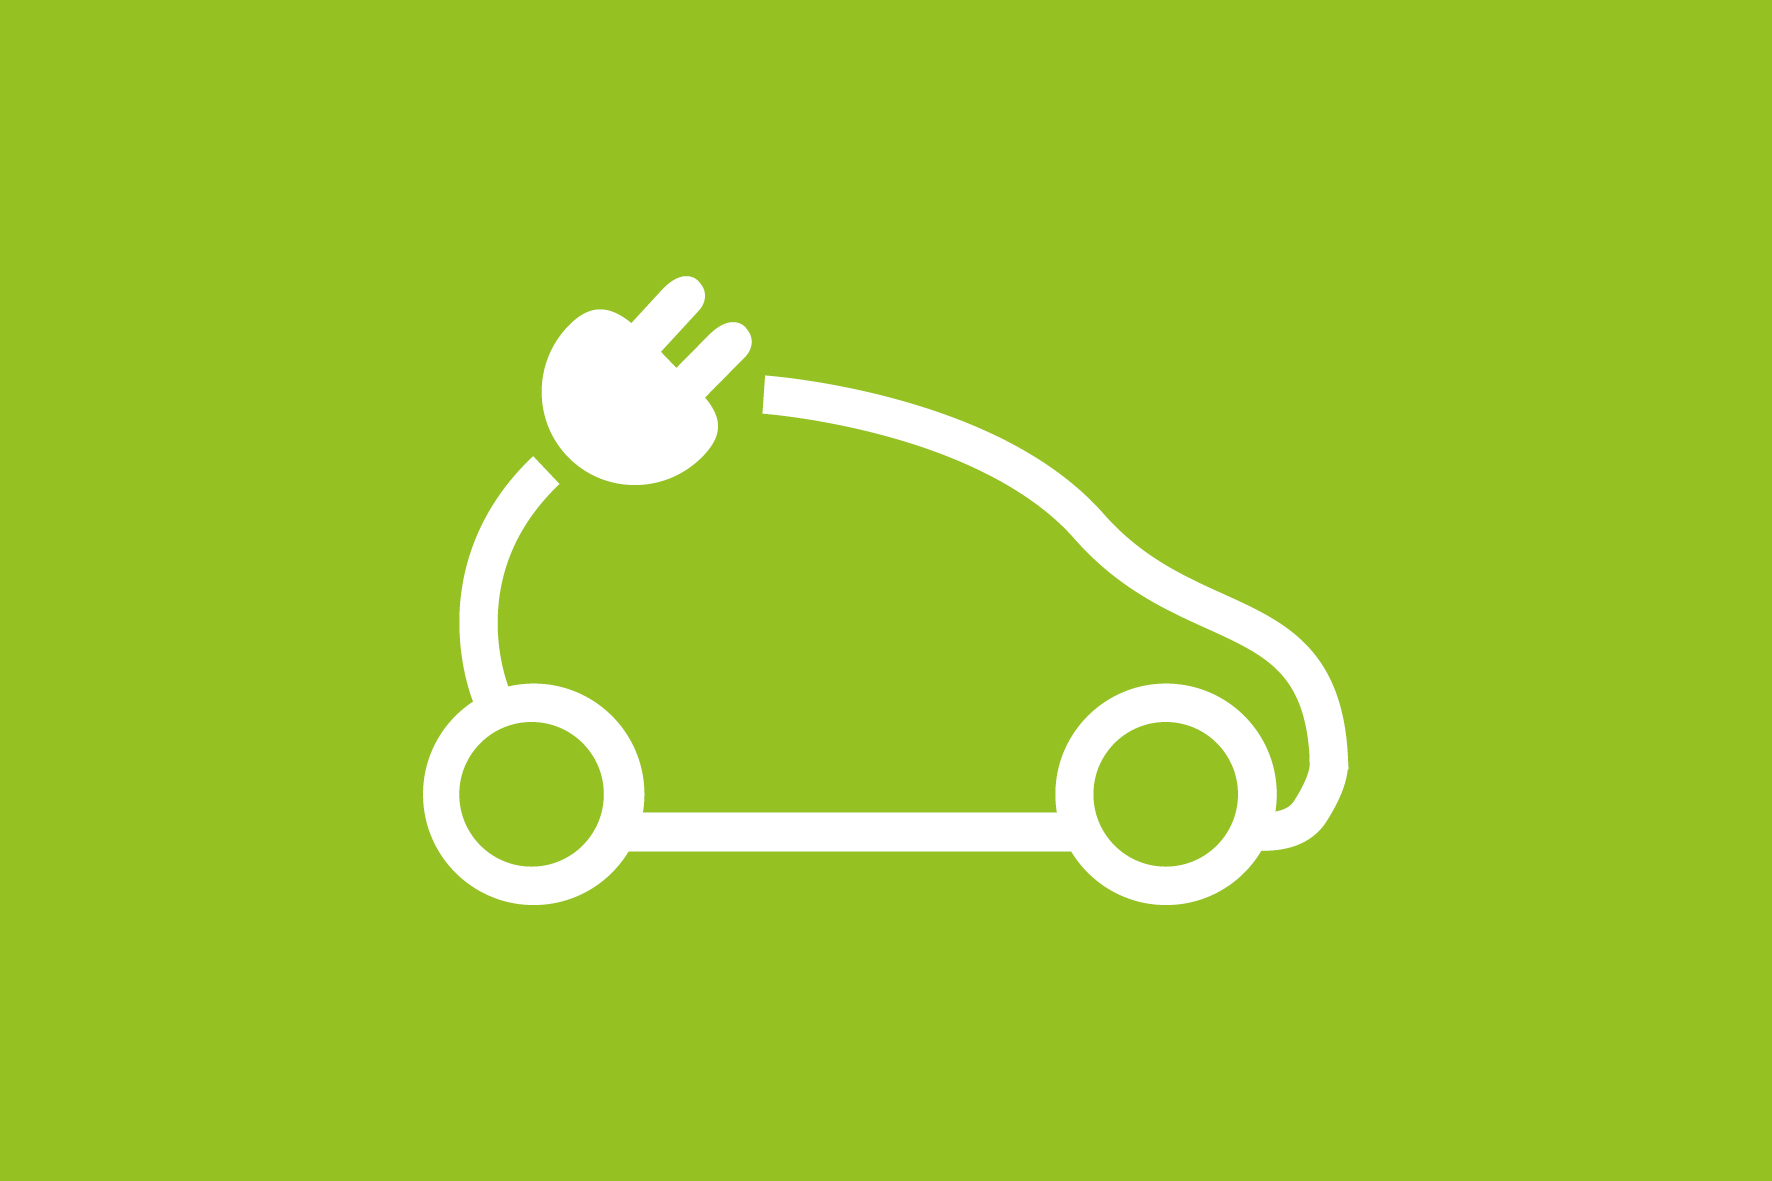 Borne de recharge véhicules électriques : Parking souterrain Decathlon